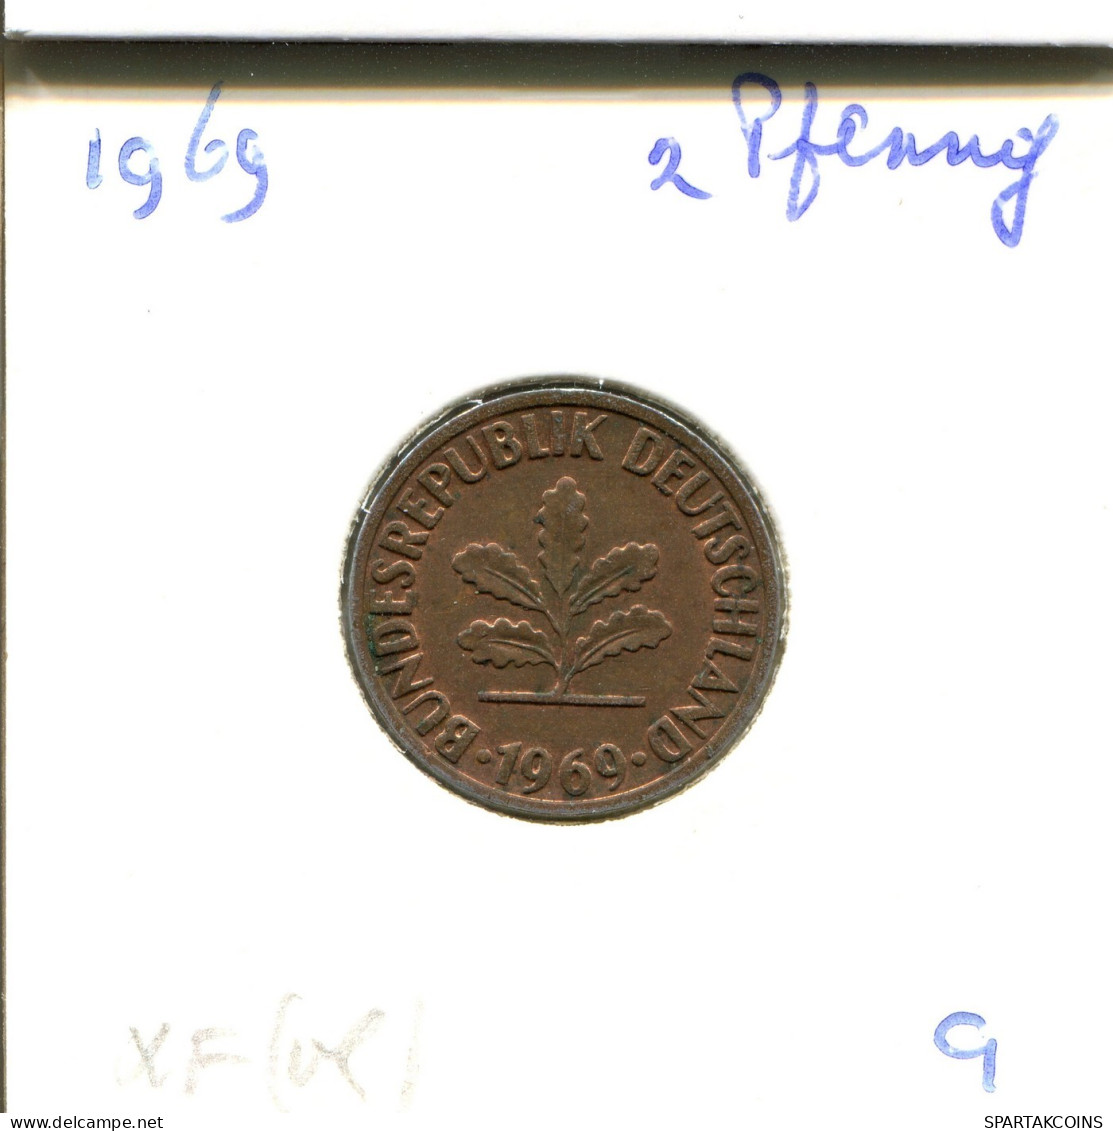 2 PFENNIG 1969 G BRD ALEMANIA Moneda GERMANY #DB016.E.A - 2 Pfennig